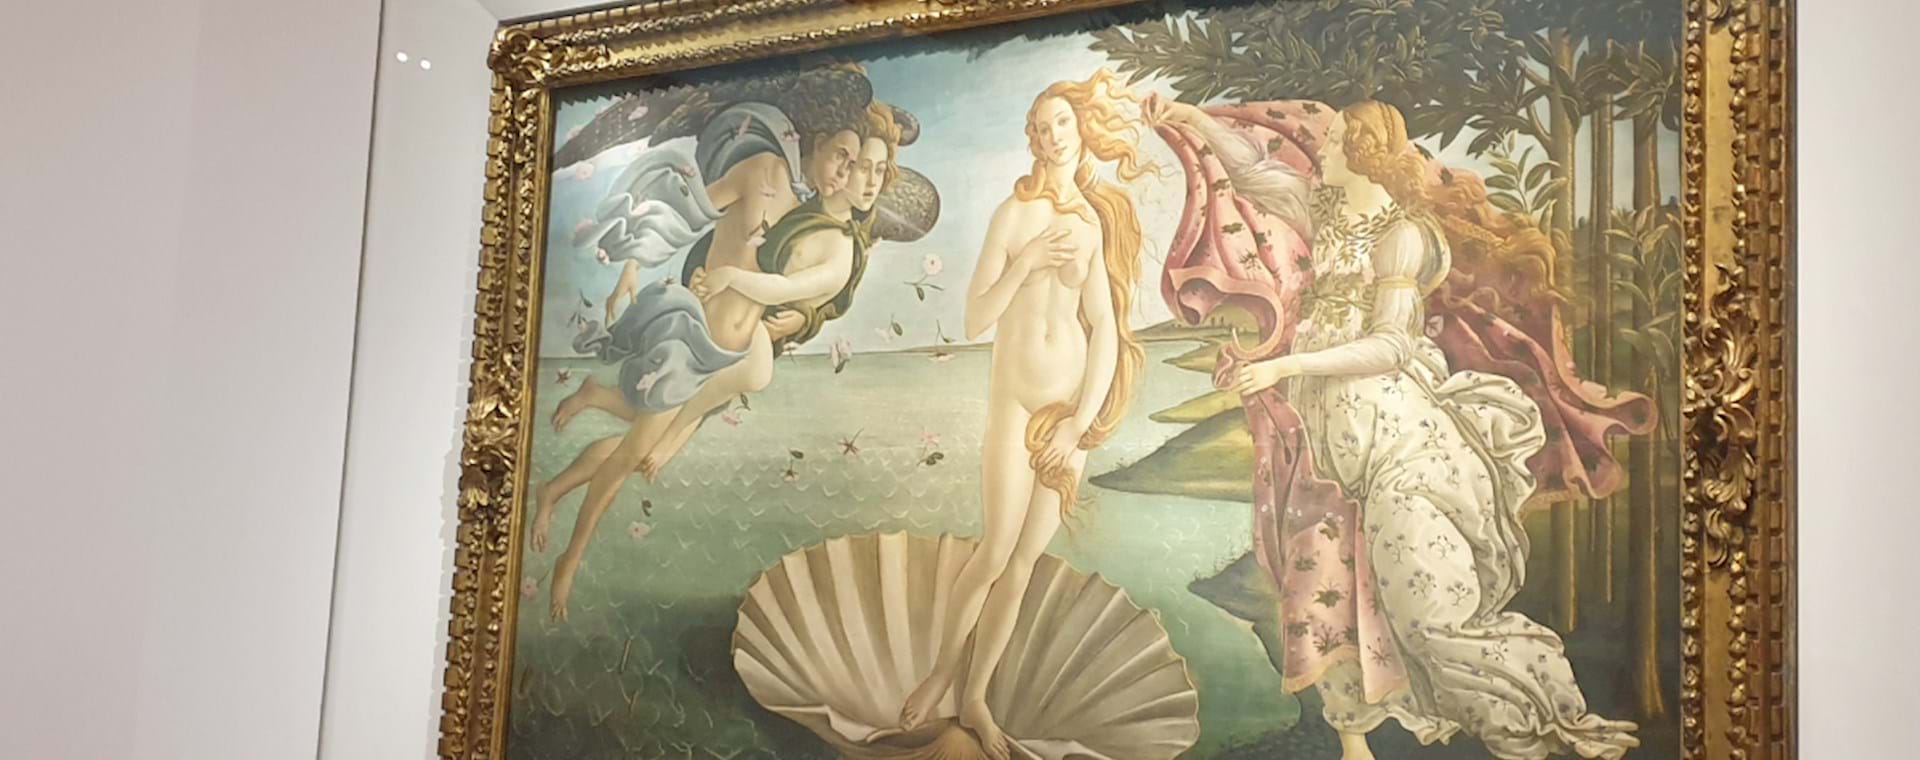 La venere di Botticelli